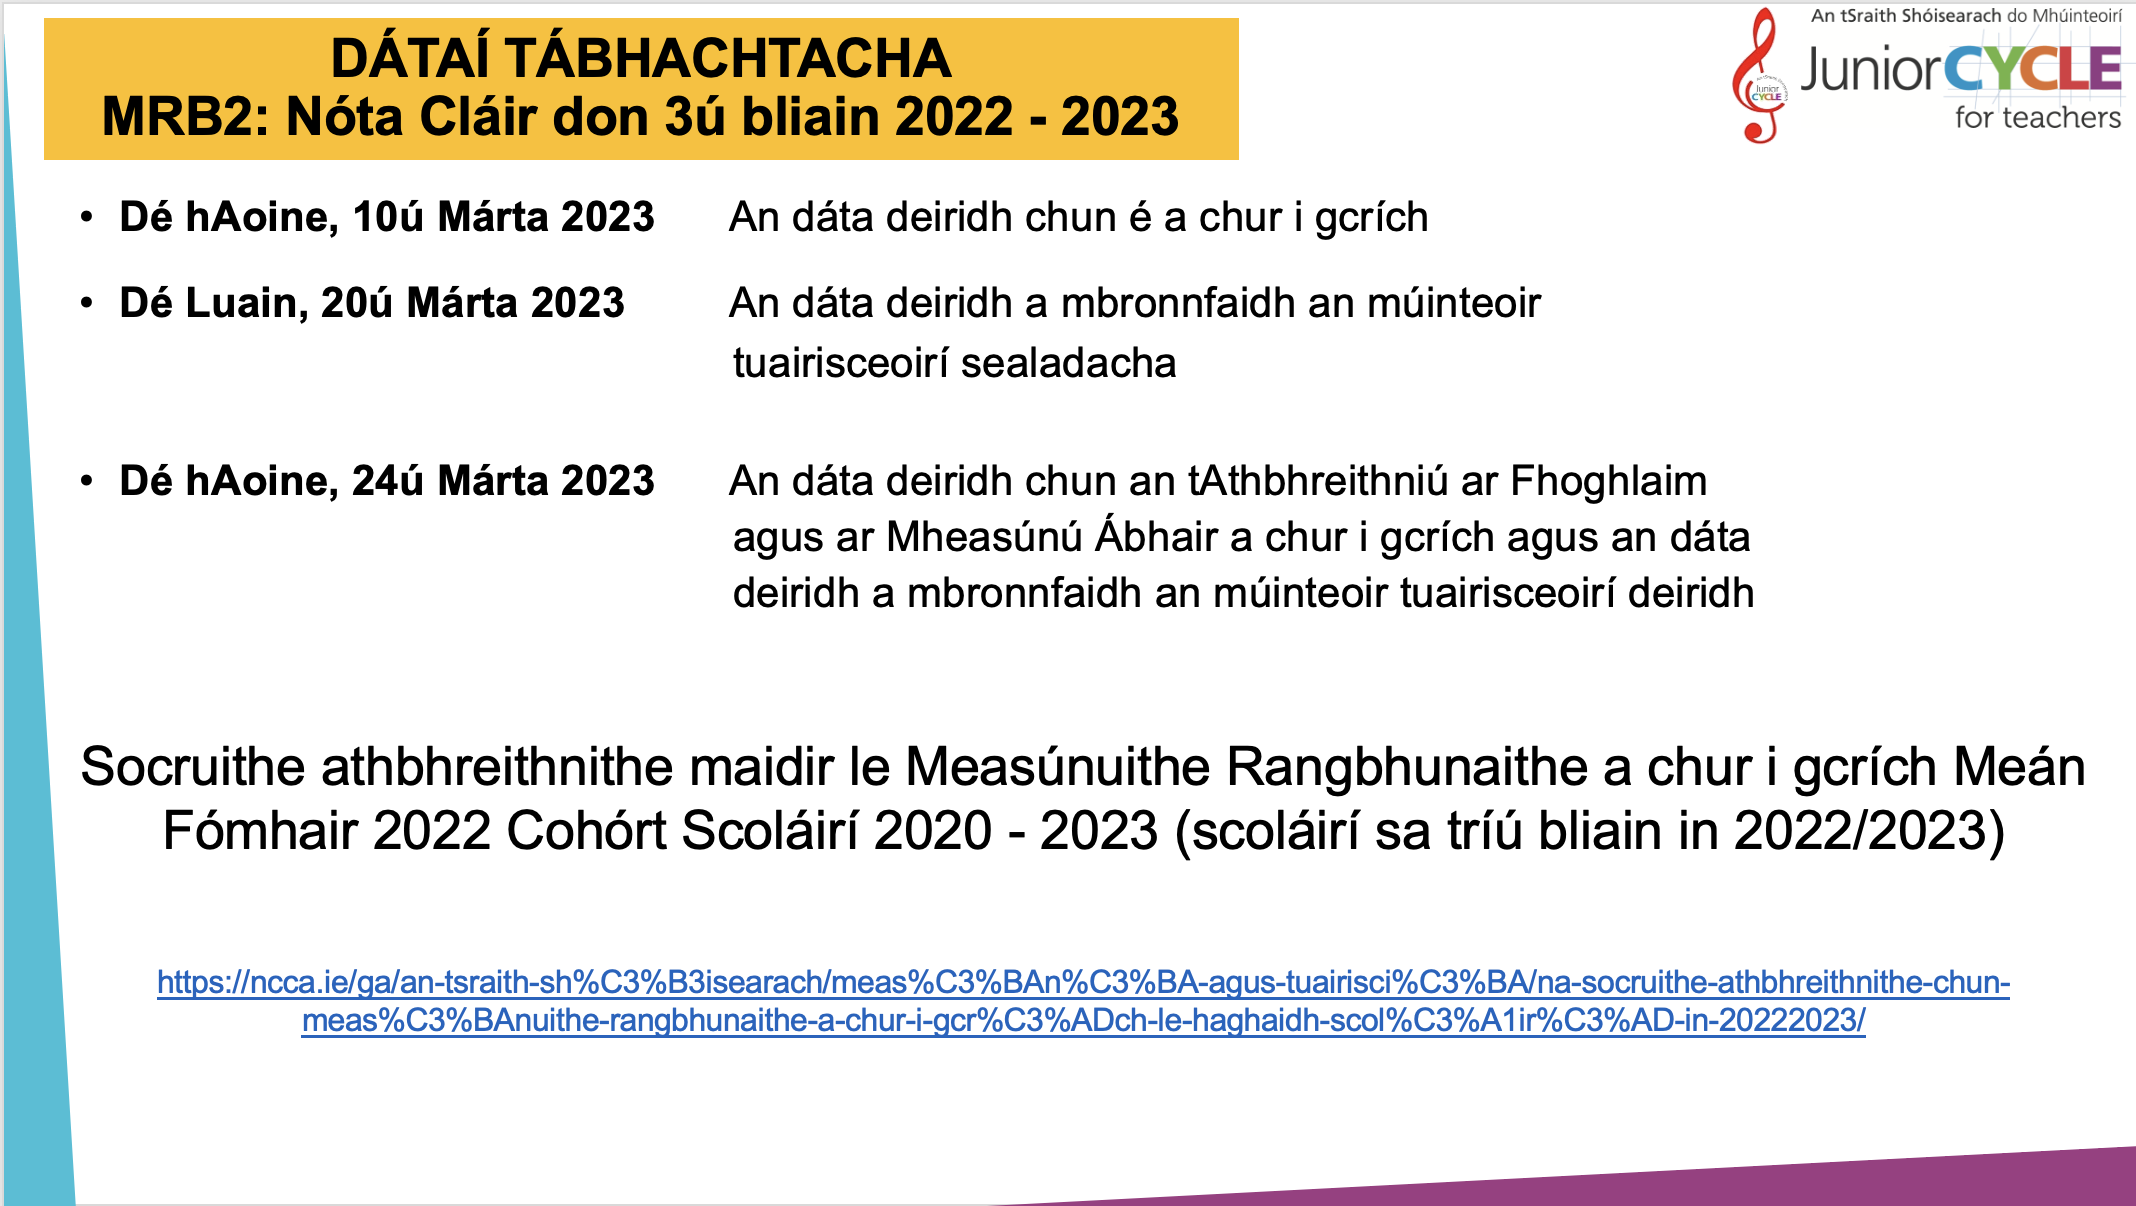 MRB2: Nóta Cláir don 3ú bliain 2022 - 2023